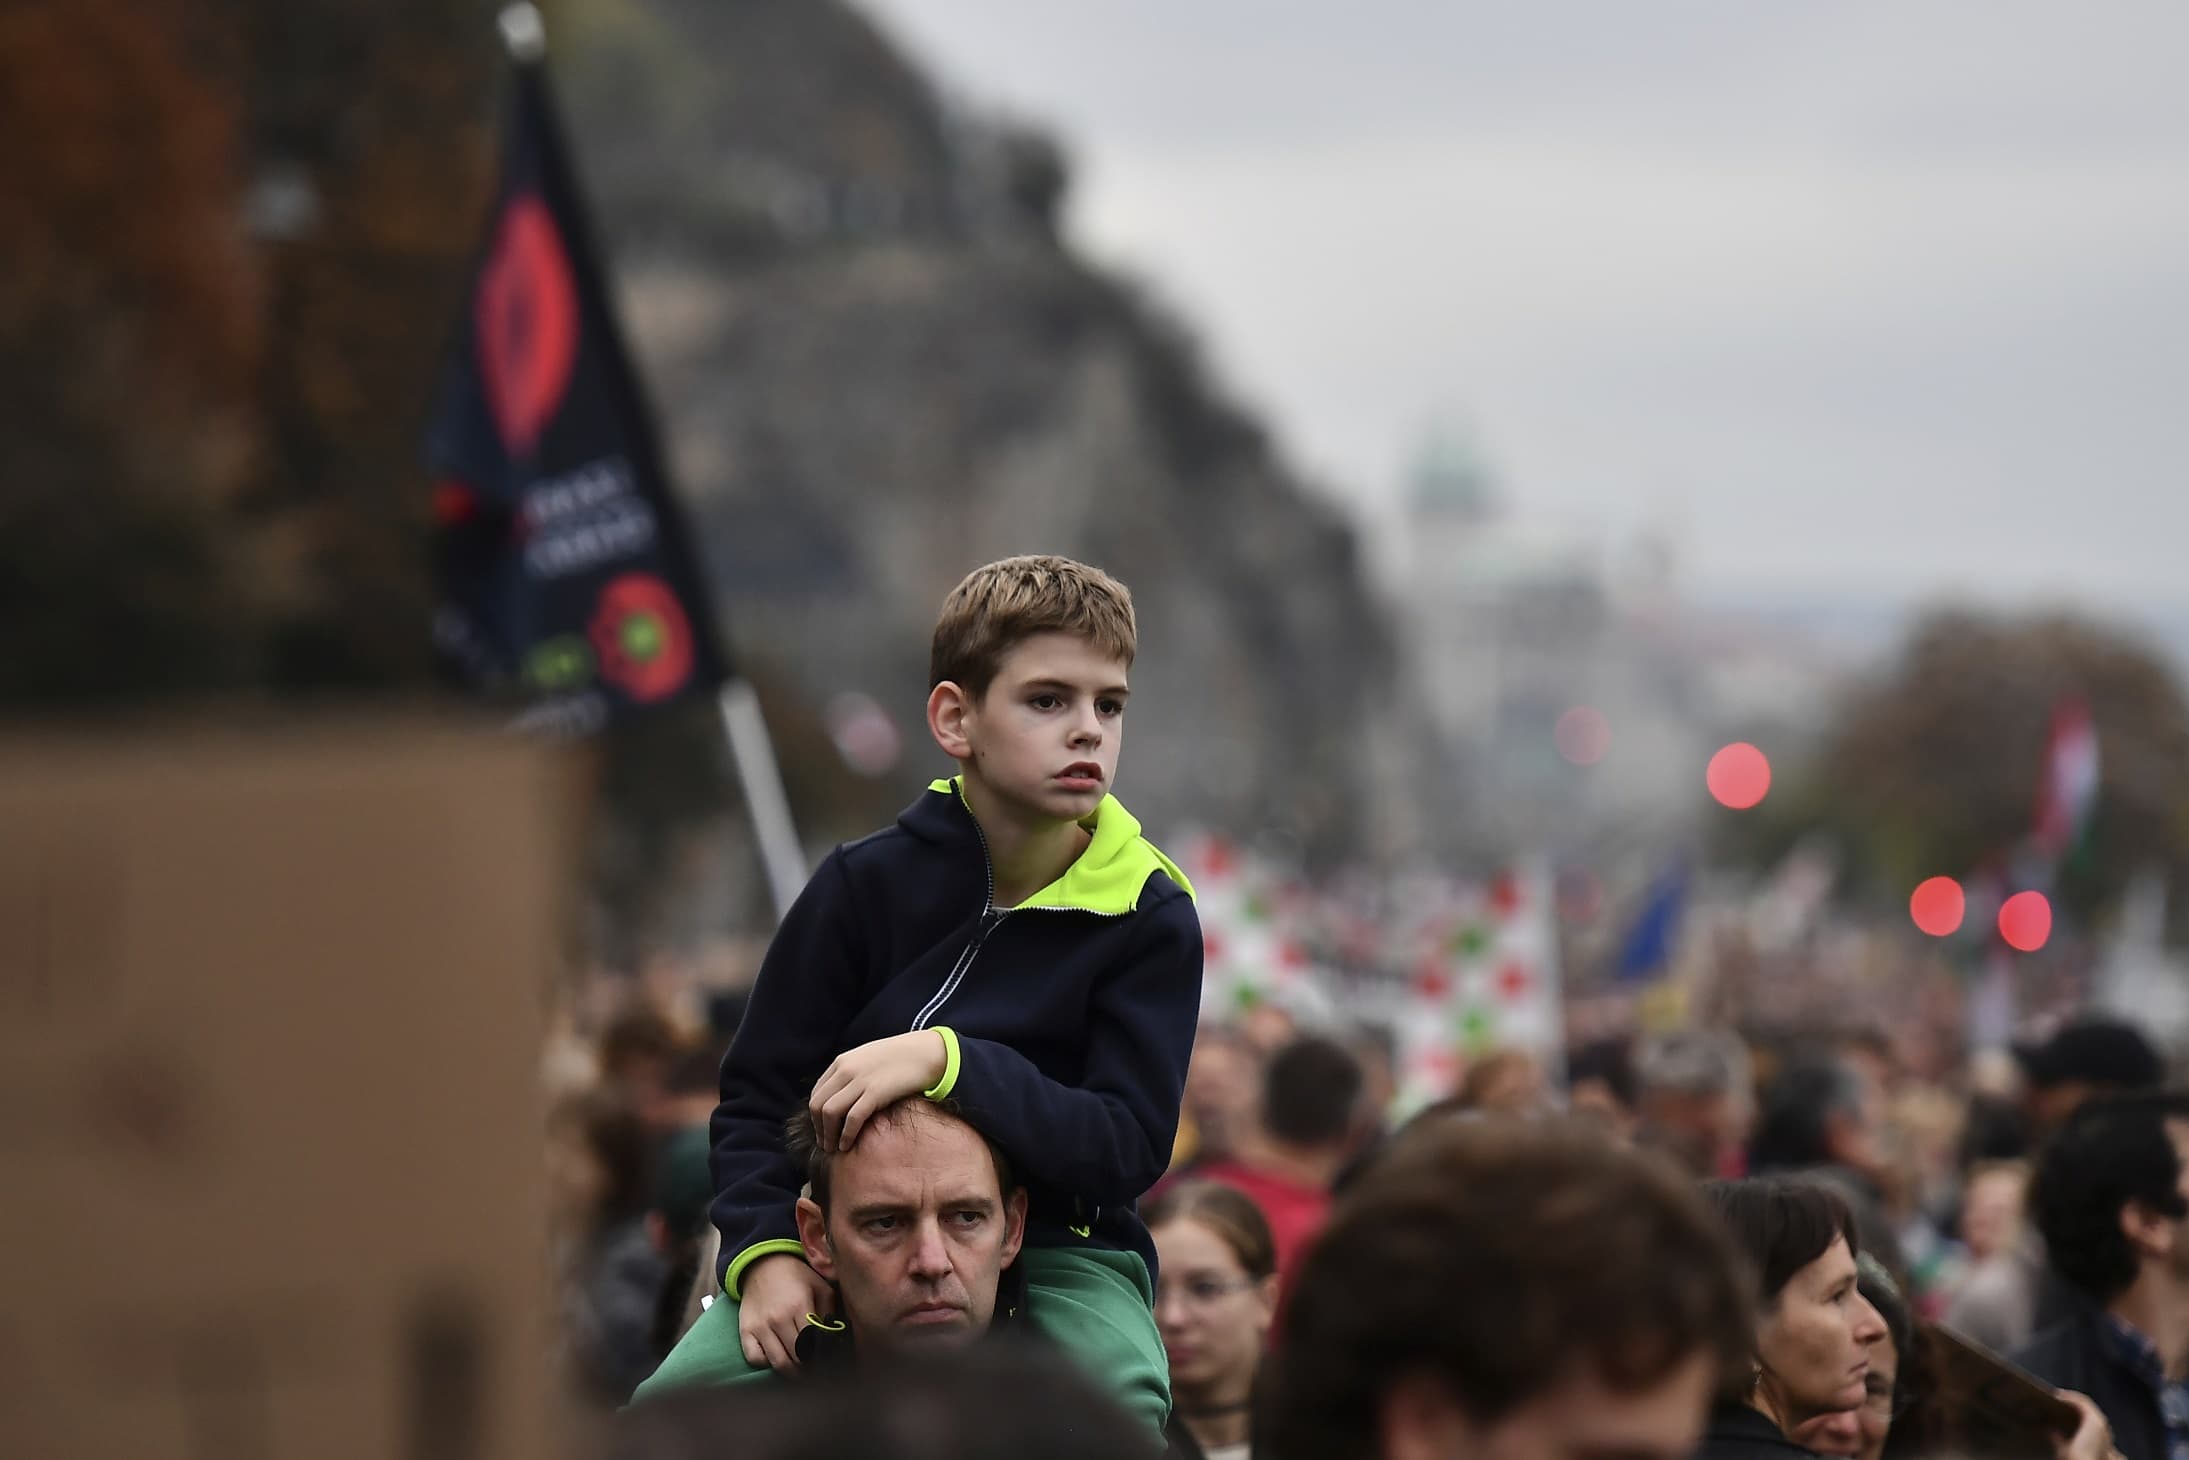 הפגנת סולידריות בהונגריה לשיפור תנאי המורים, 23 באוקטובר 2022 (צילום: AP Photo)